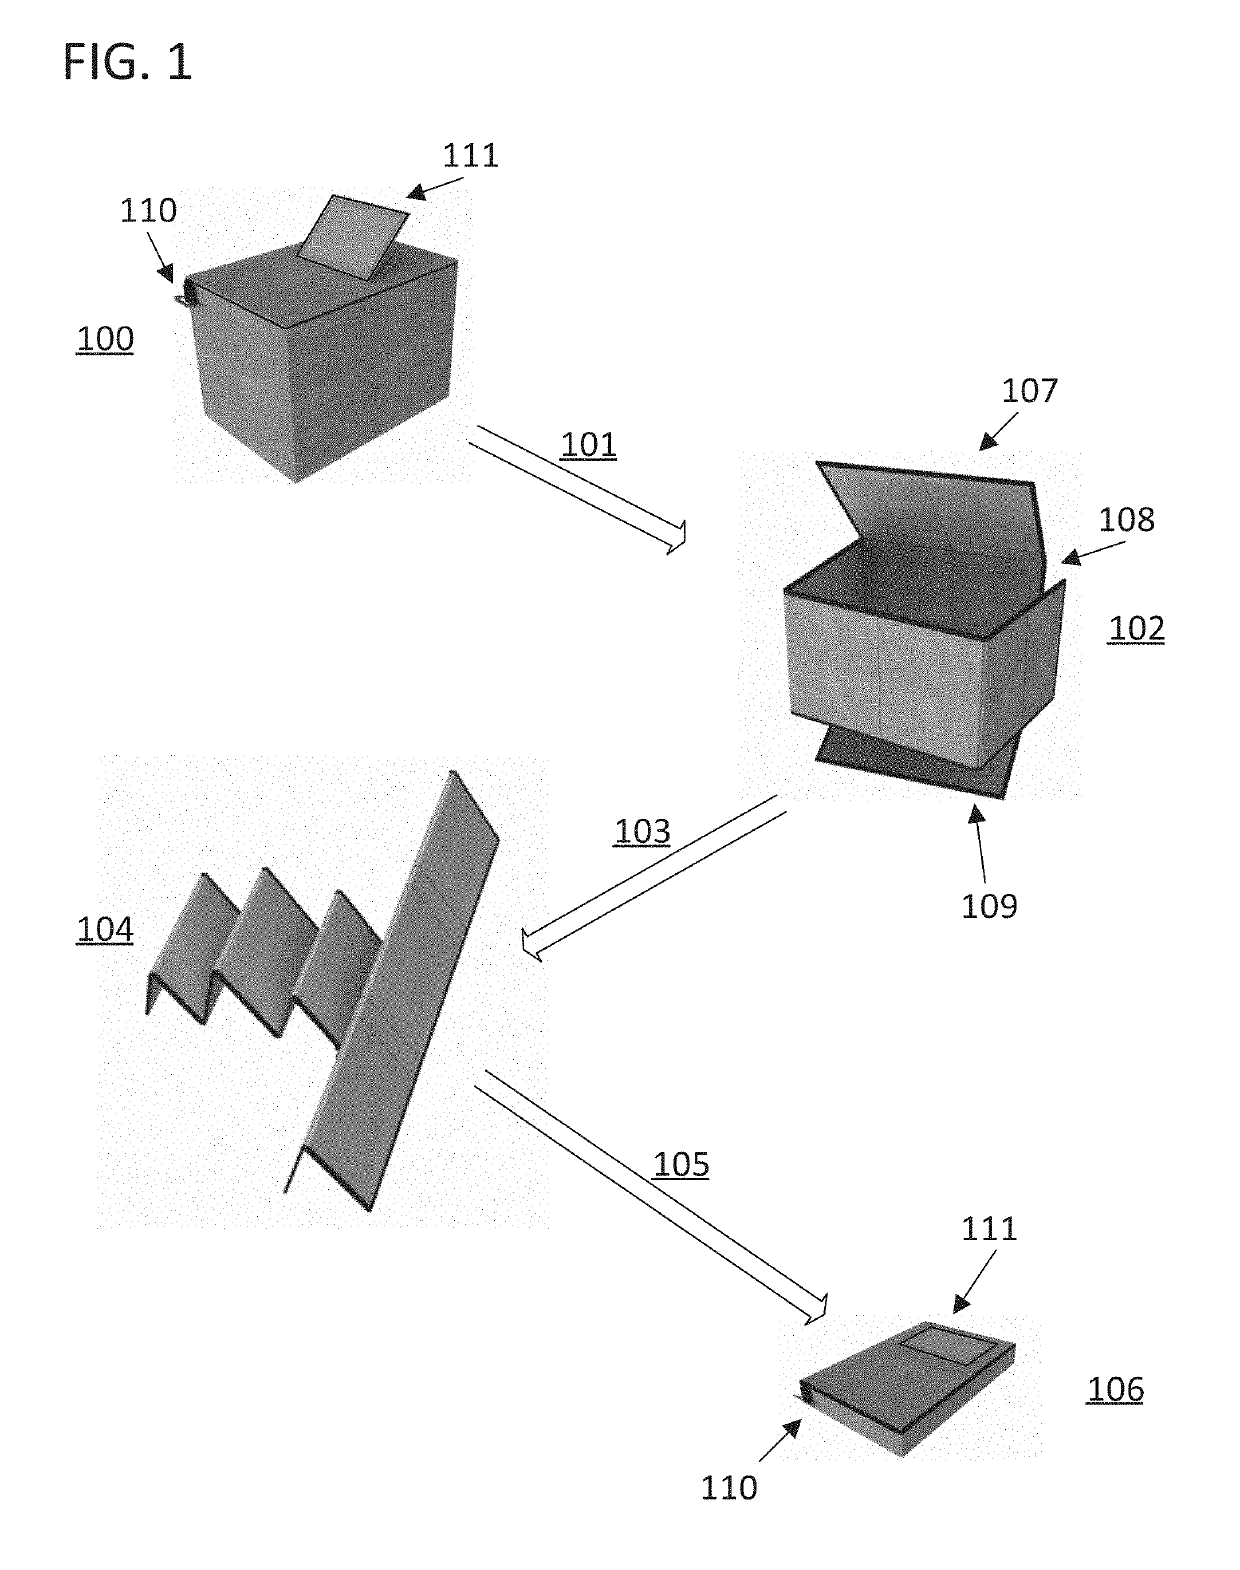 Reusable zipper-reconfigurable shipping box